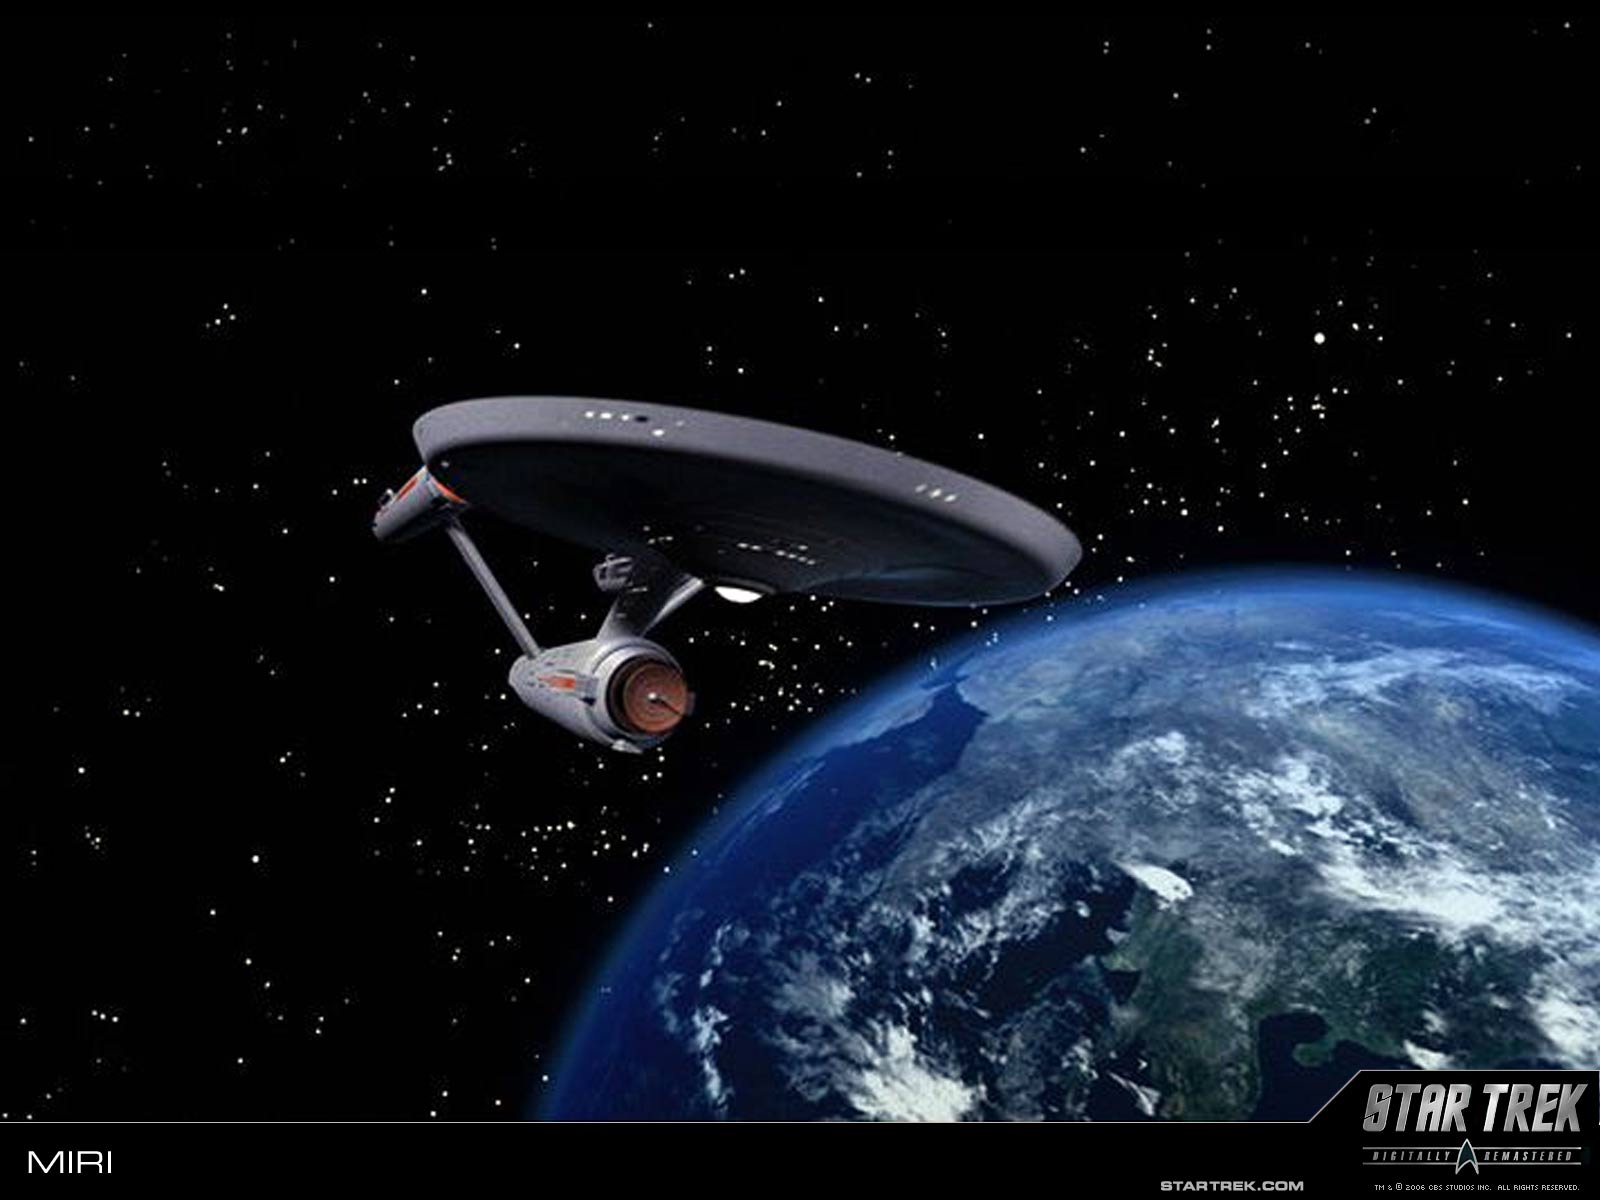 Wallpaper Trekcore Star Trek Tos Screencap Amp Image